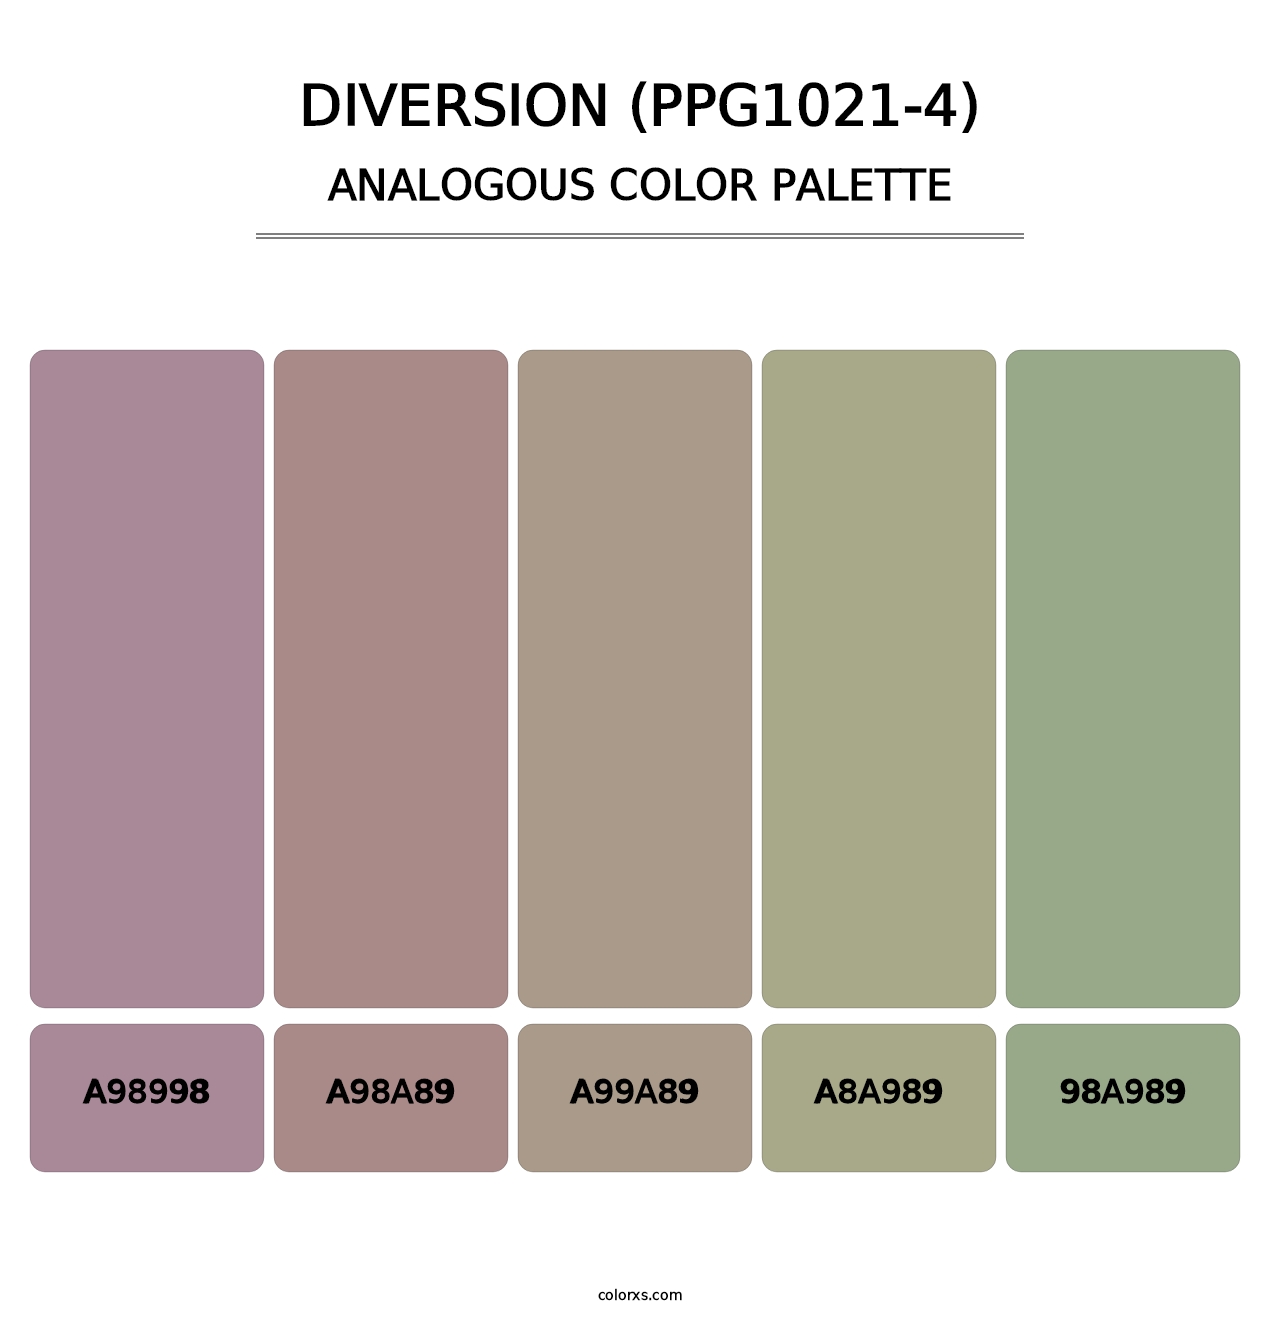 Diversion (PPG1021-4) - Analogous Color Palette